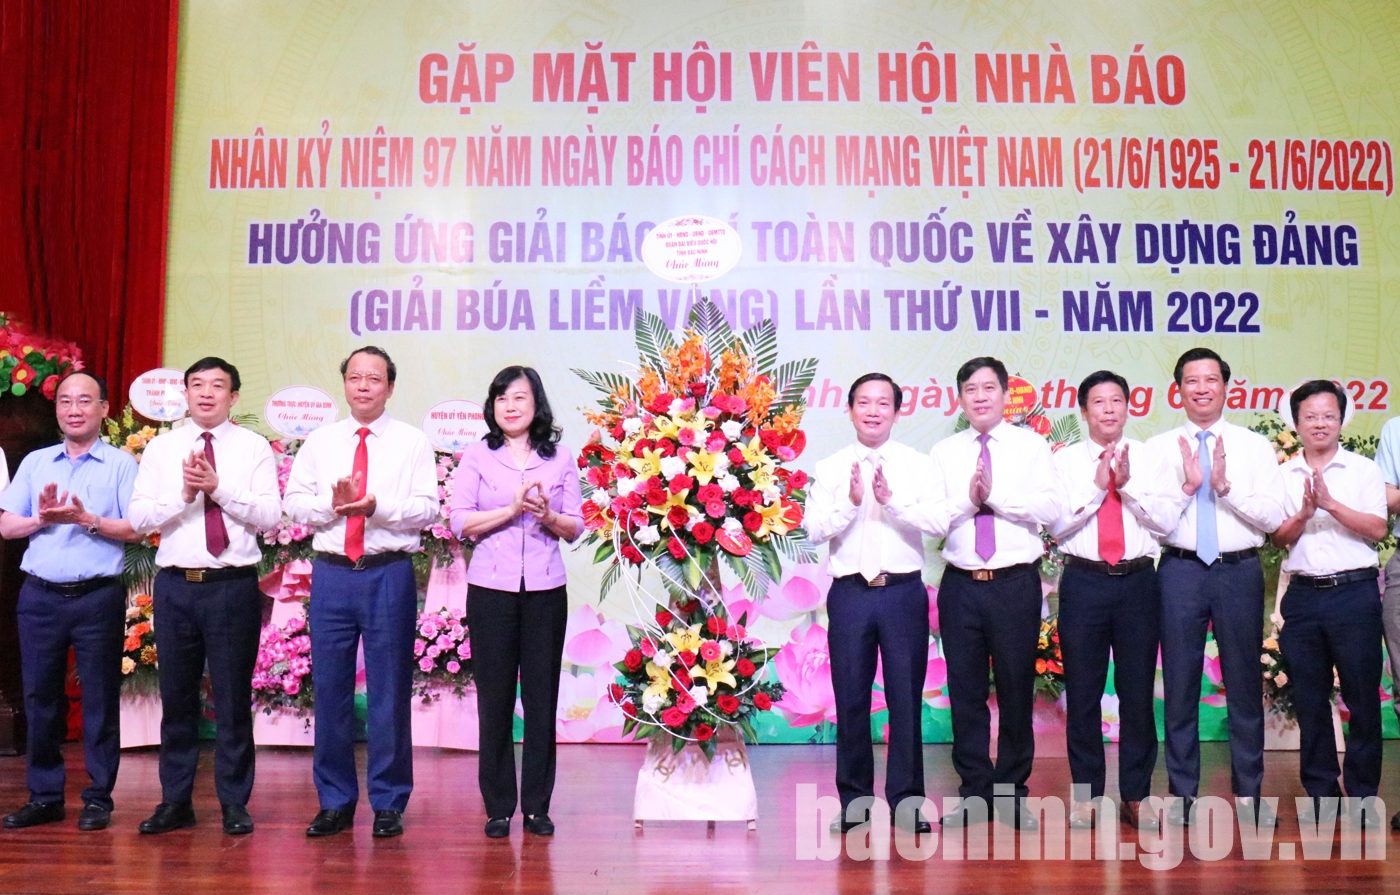 Gặp mặt hội viên Hội Nhà báo tỉnh Bắc Ninh nhân kỷ niệm 97 năm Ngày Báo chí Cách mạng Việt Nam